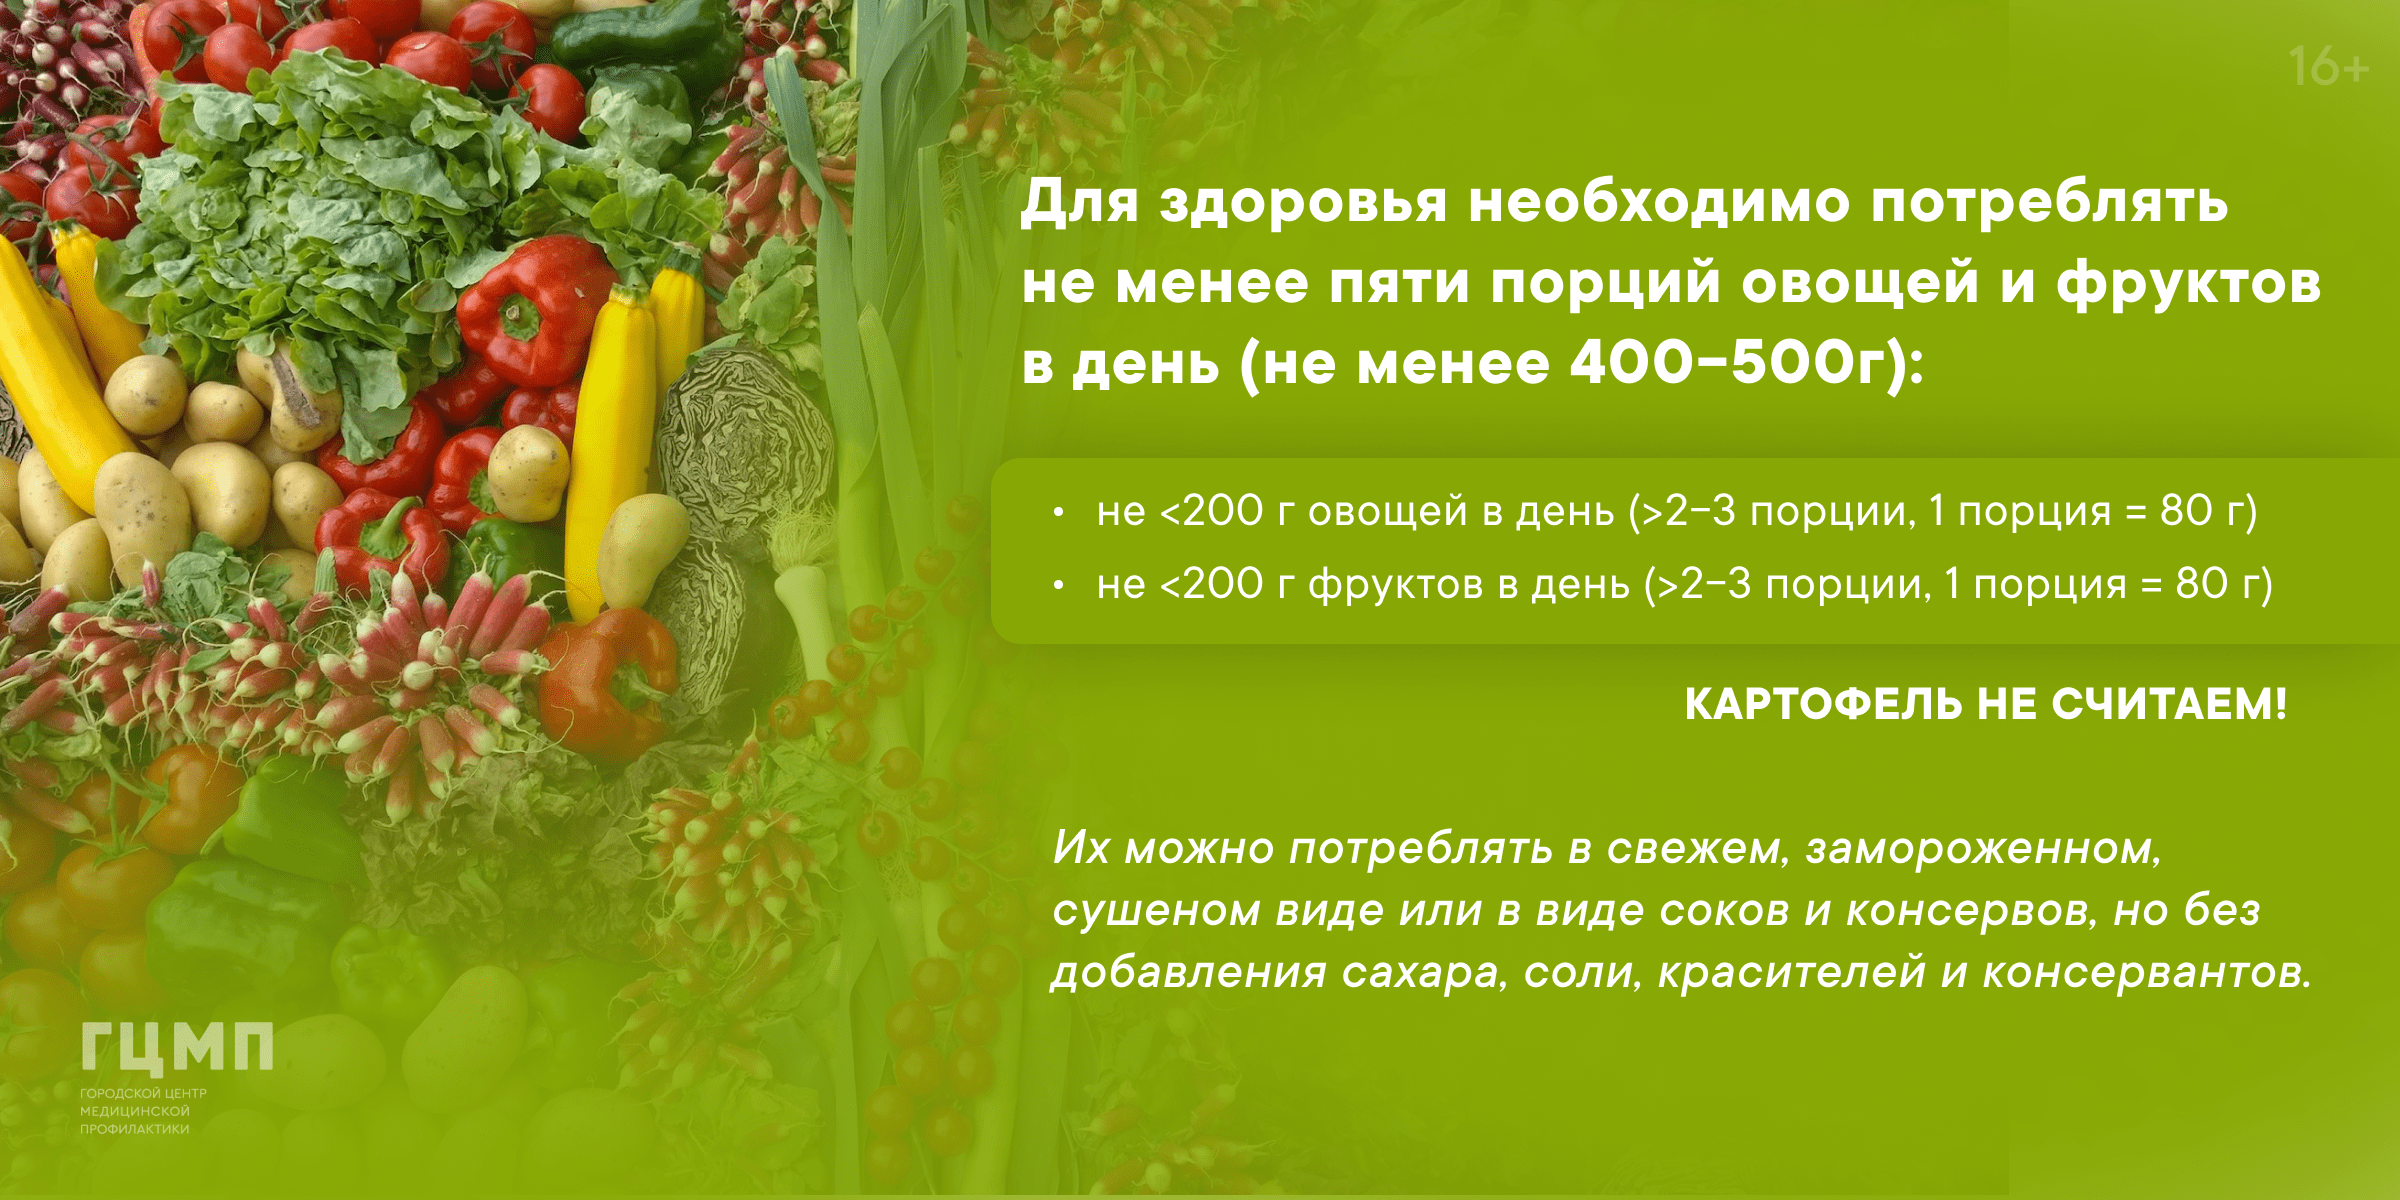 Неделя популяризации потребления овощей и фруктов (с 13 по 19.02.2023)